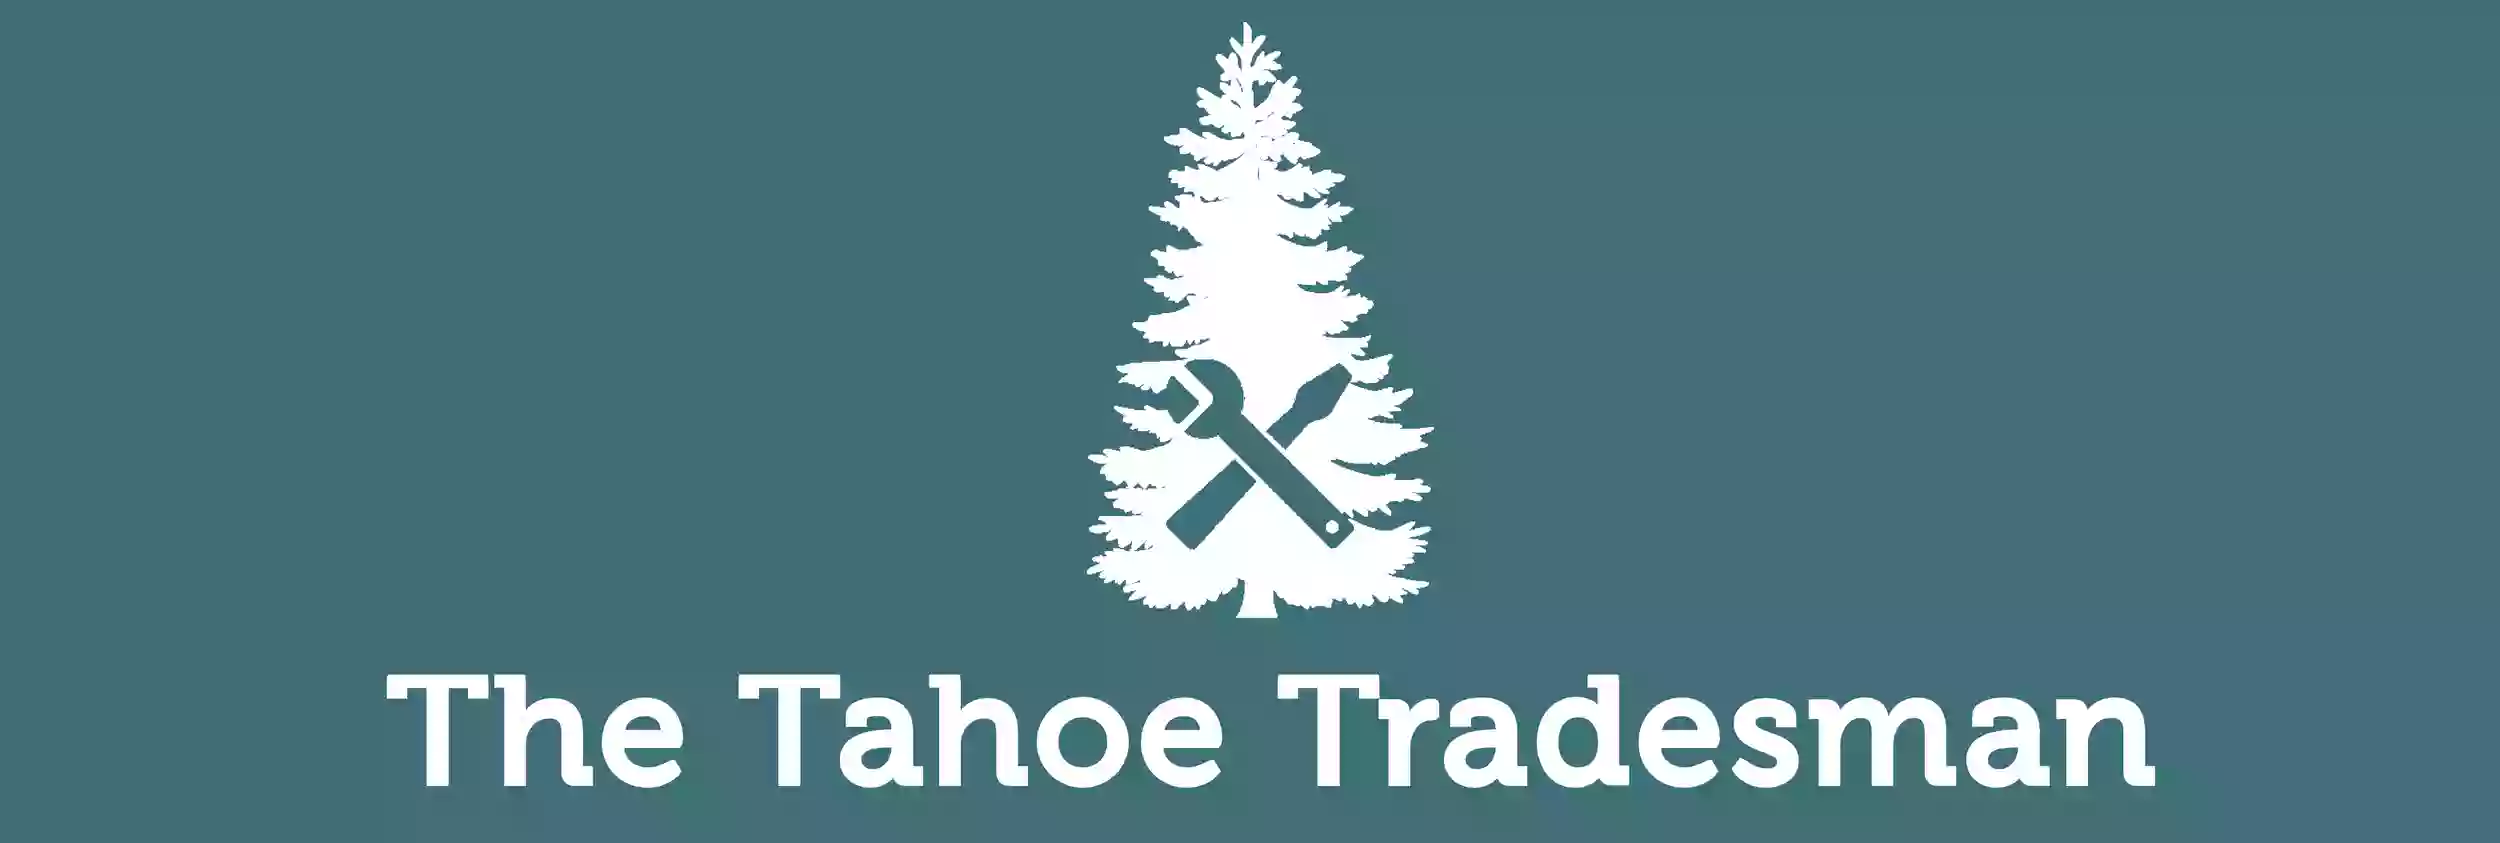 The Tahoe Tradesman